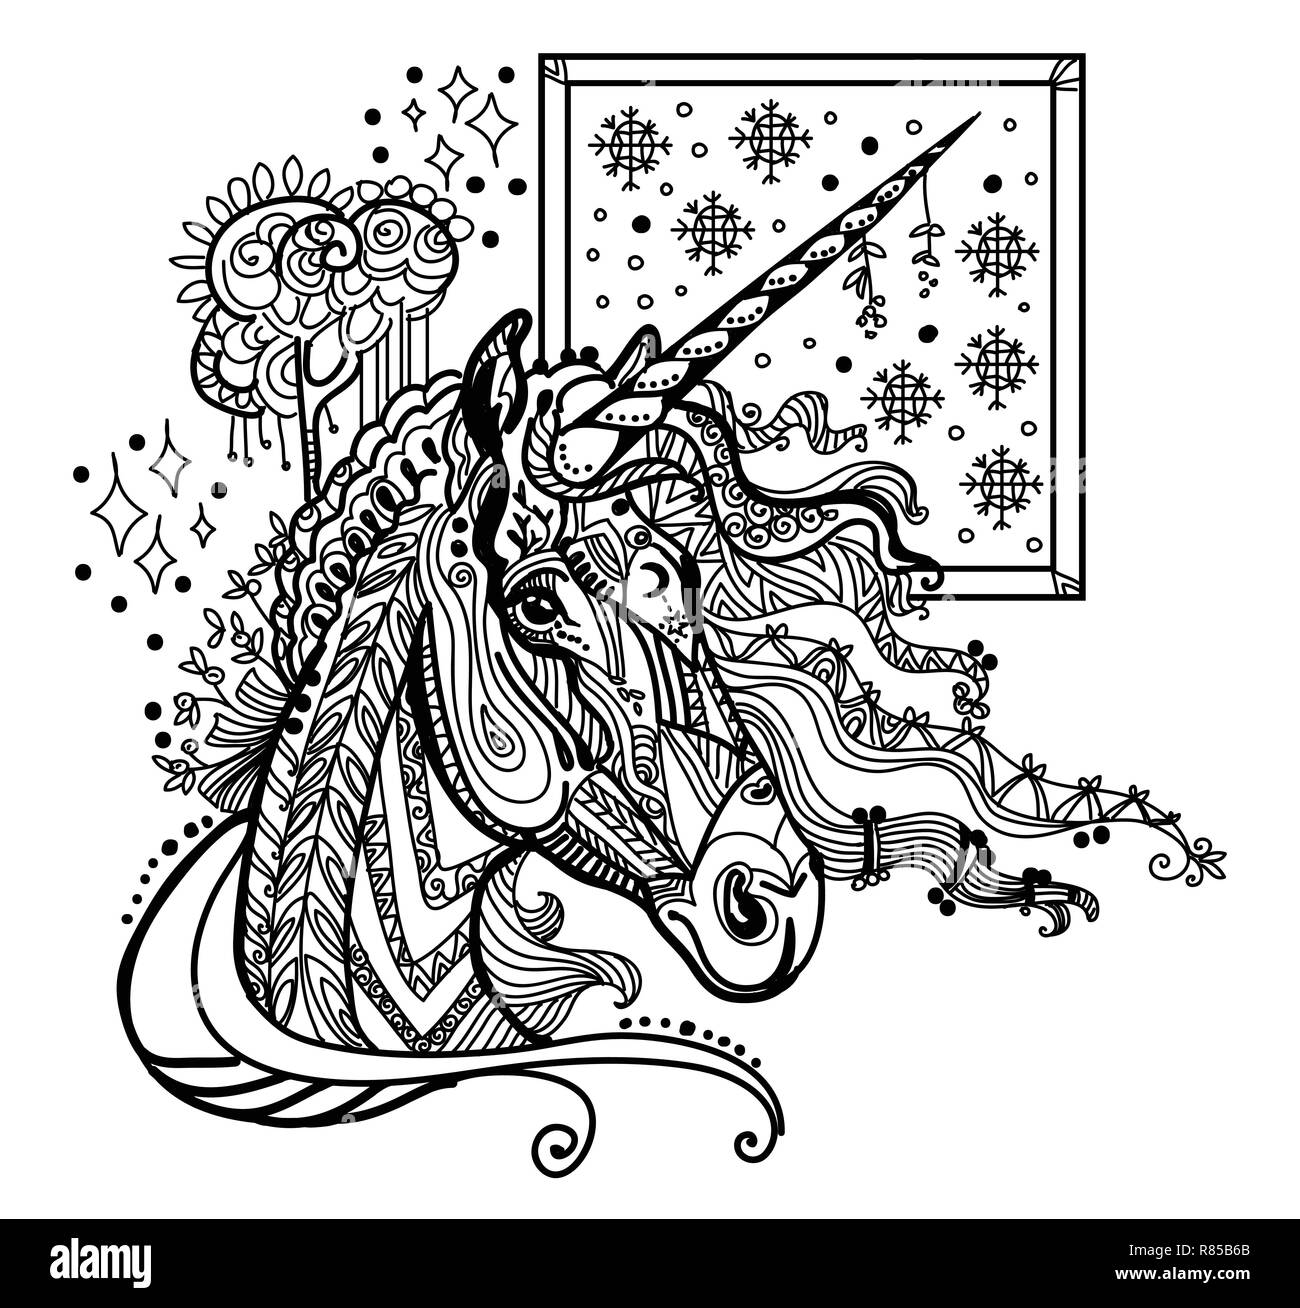 Vektor hand Zeichnung Abbildung zentangle Einhorn in schwarzer Farbe auf weißem Hintergrund. Doodle Einhorn Abbildung. Färbung fantasy Unicorn Stock Vektor